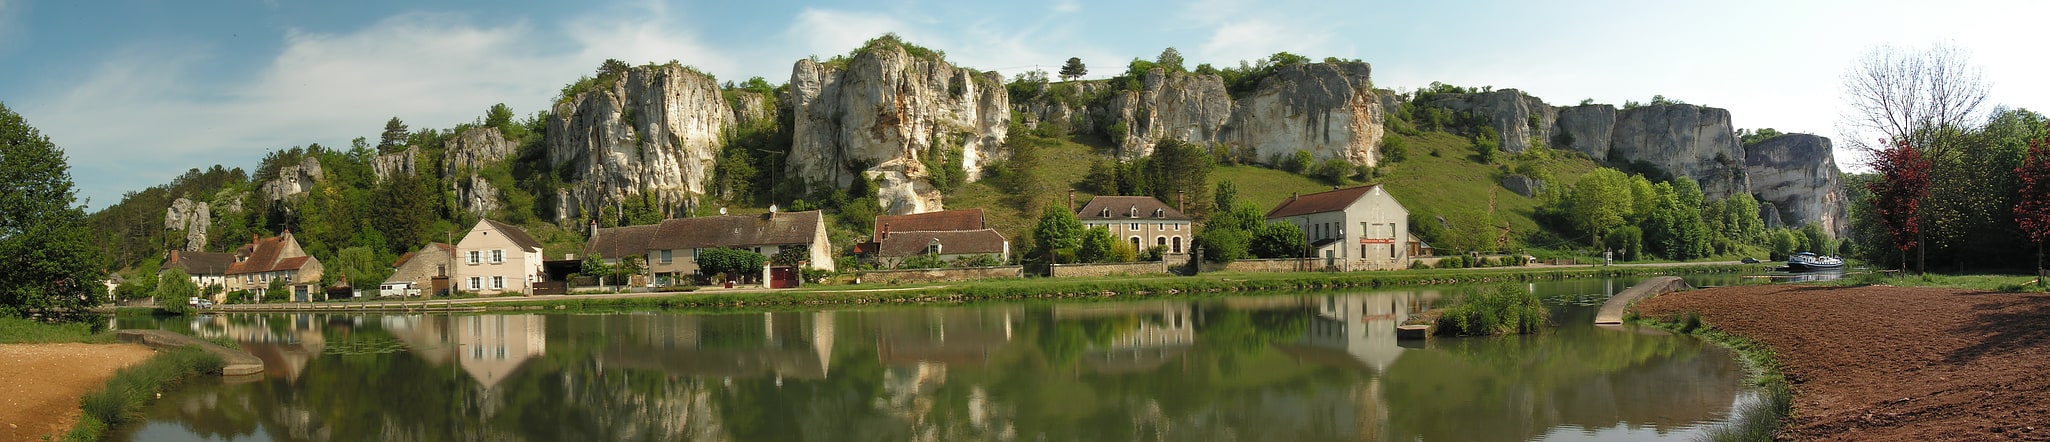 Merry-sur-Yonne, Francia